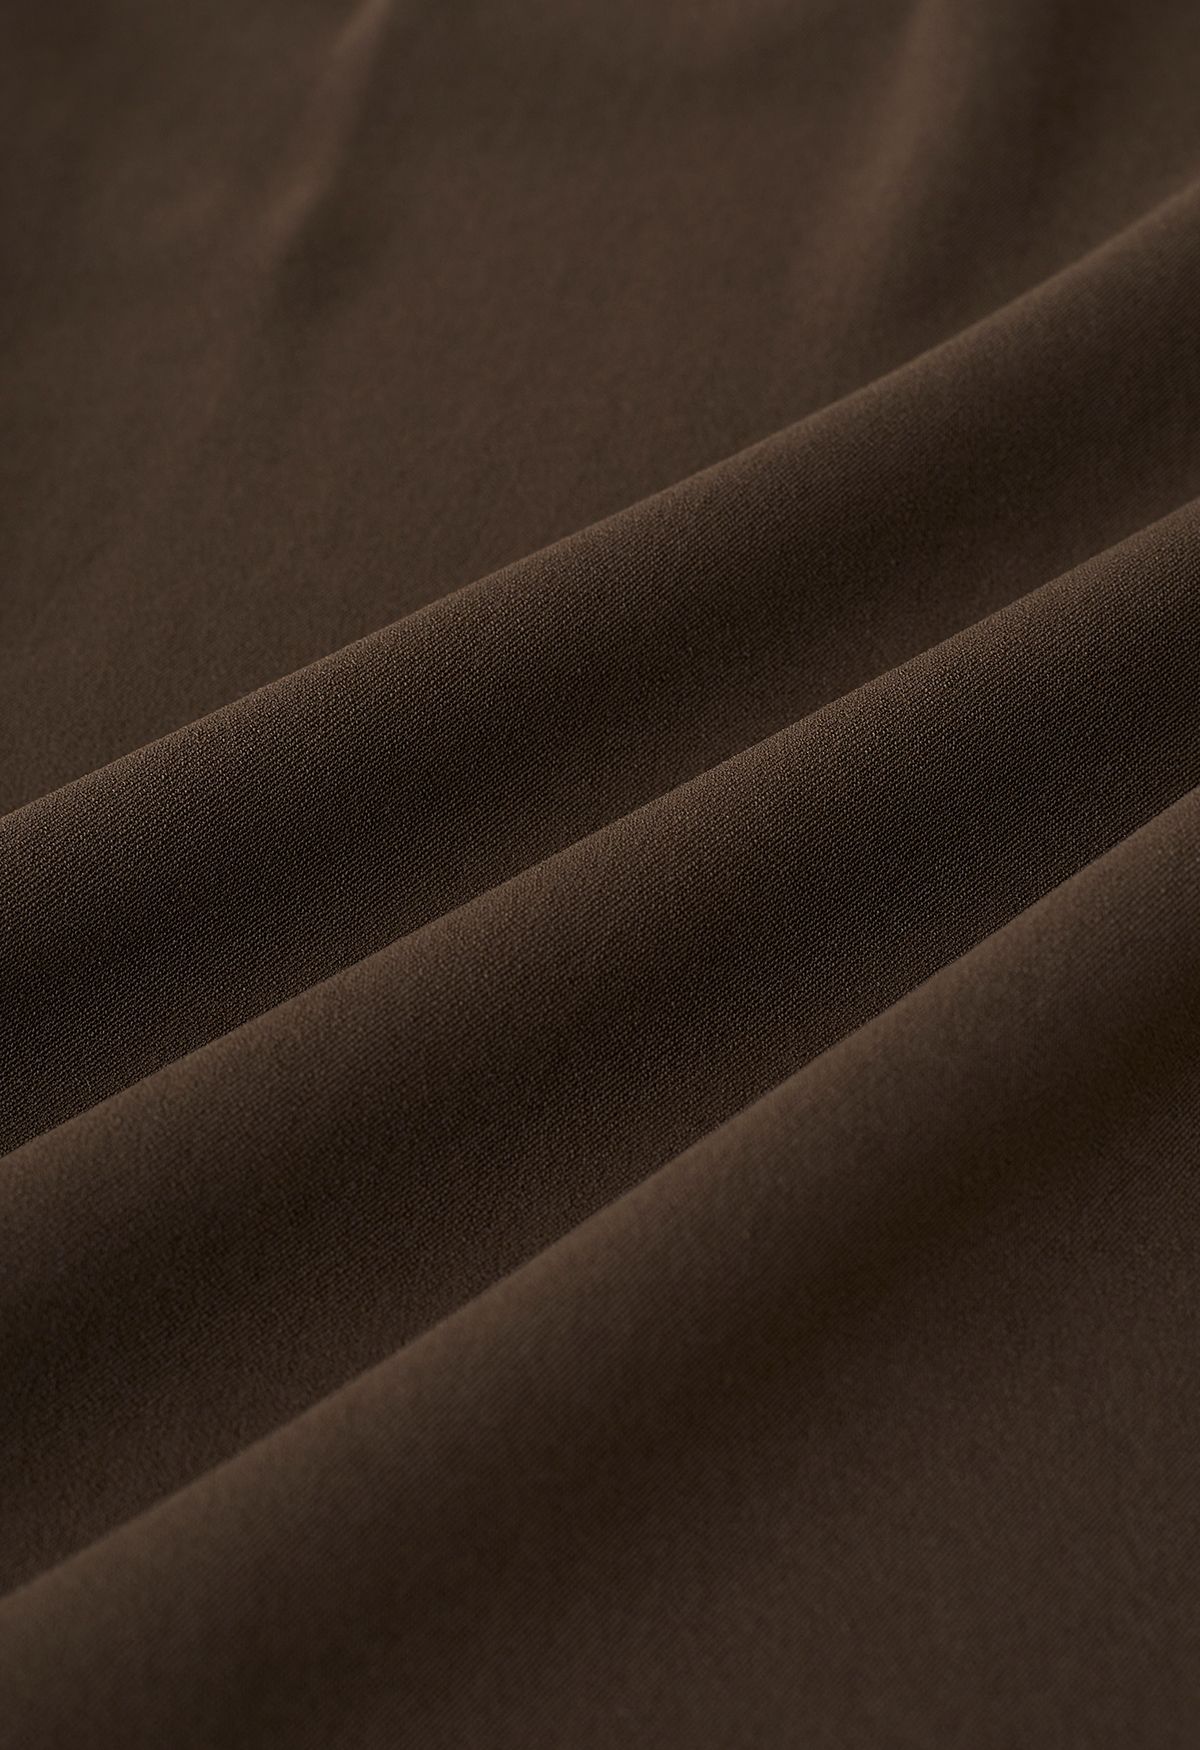 Pantalones de pierna recta plisados con cordón lateral en marrón